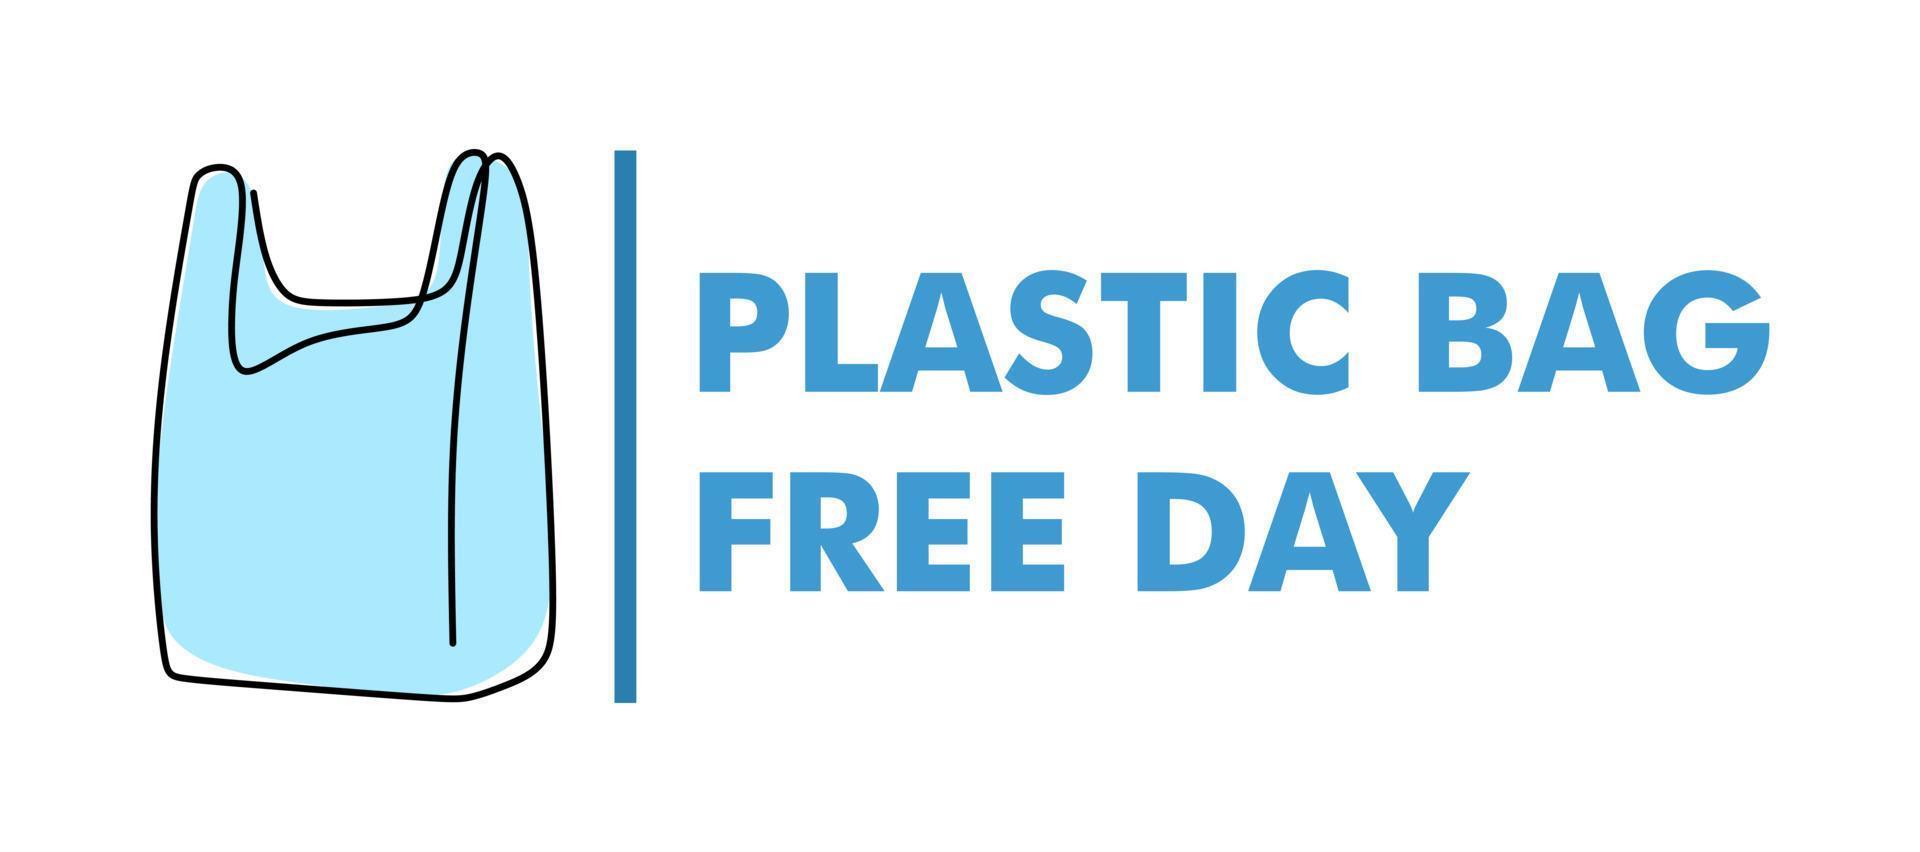 bolsa de plástico, contaminación ambiental. Día libre de bolsas de plástico. ilustración para carteles, sitios web y aplicaciones móviles. vector